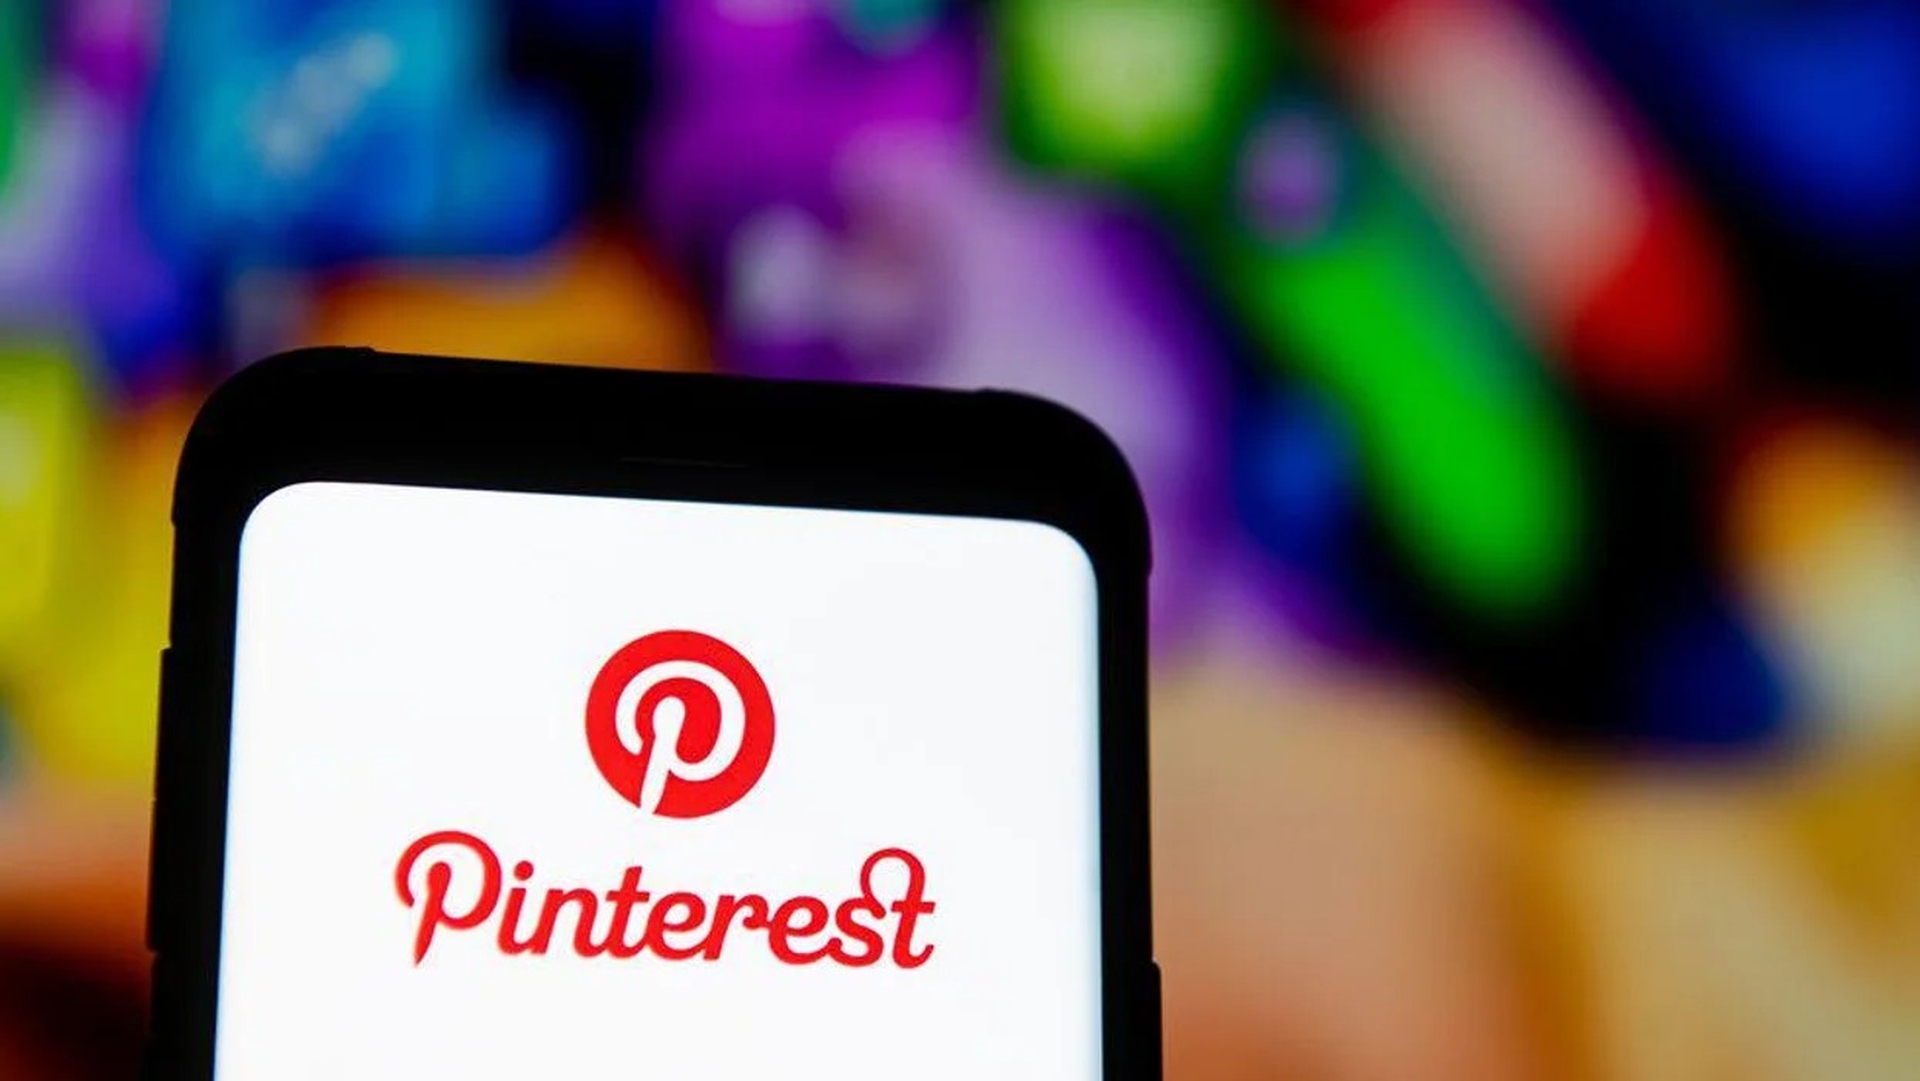 Dans cet article, nous allons expliquer comment se classer sur Pinterest en 2022, afin que vos épingles puissent devenir plus attrayantes et que vous puissiez accroître votre présence sur la plateforme.